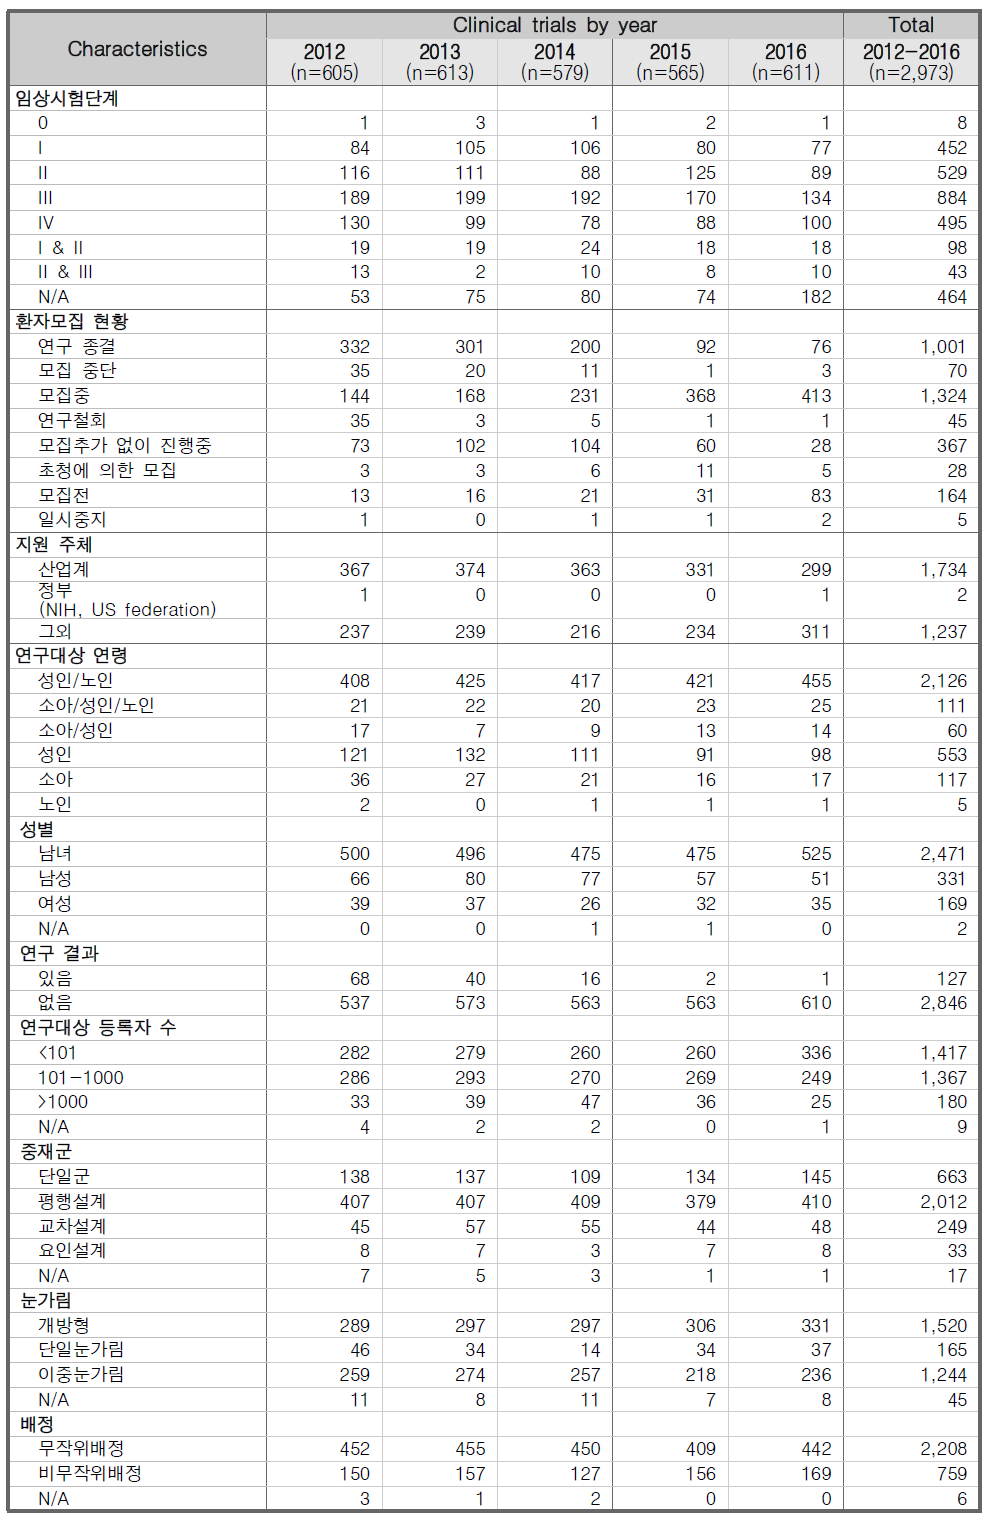 한국에서 수행된 임상시험 세부현황 분석 결과 (2012-2016년)